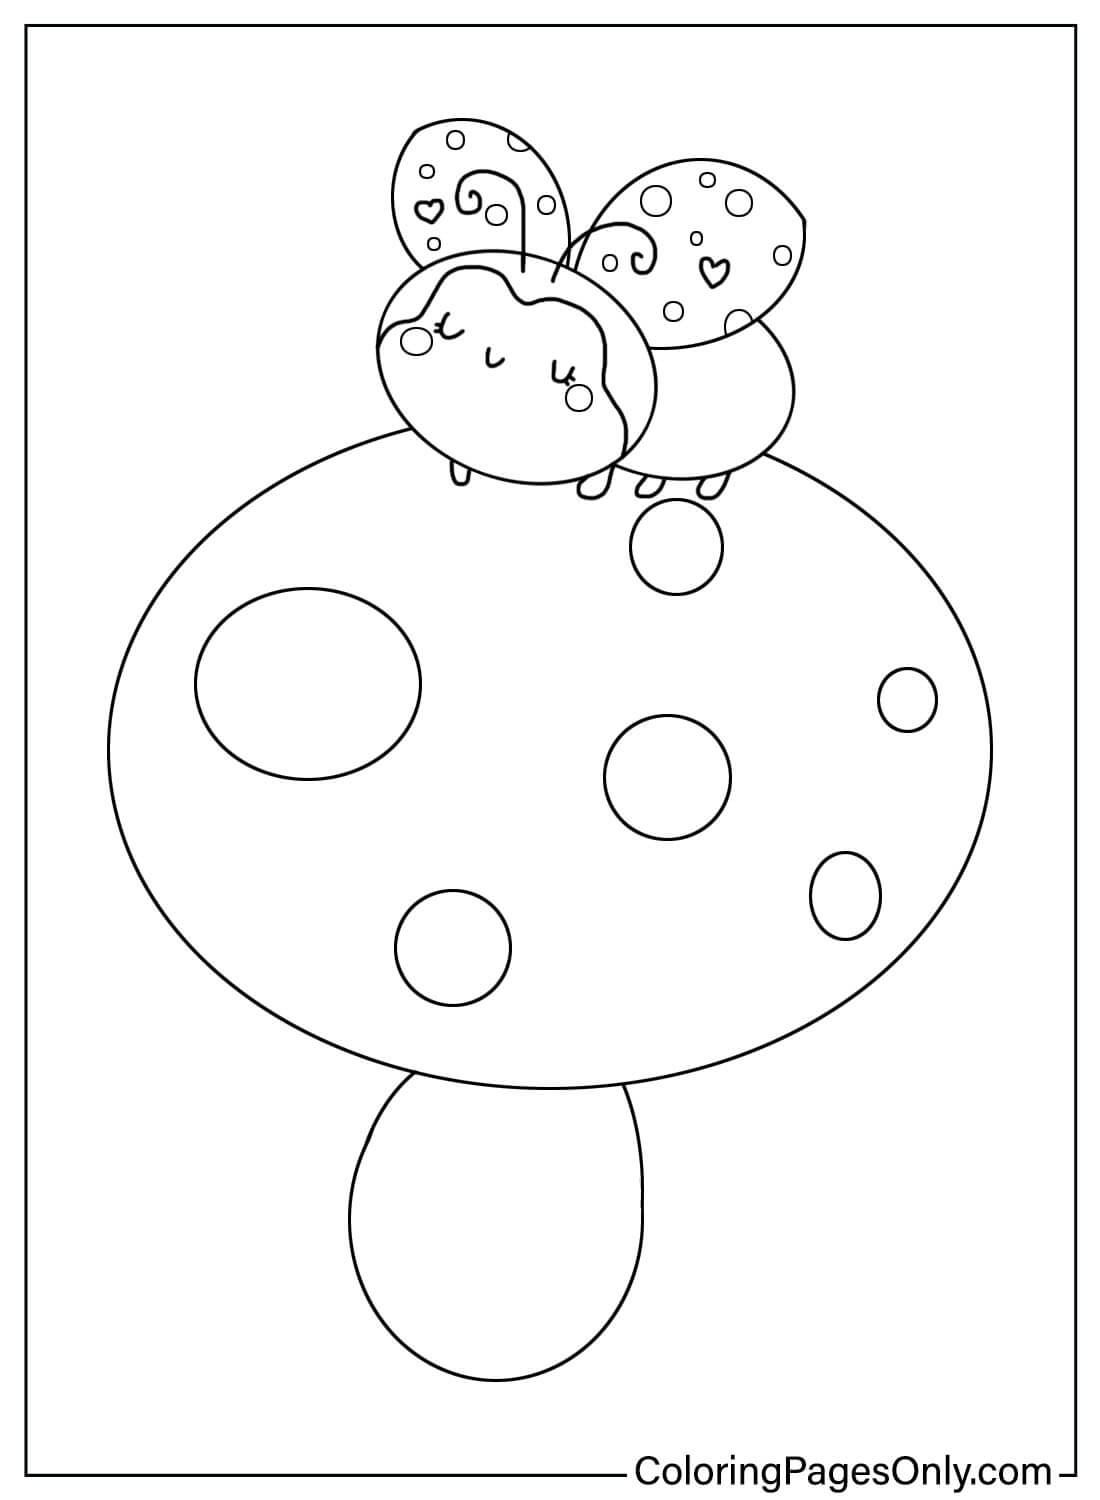 Página para colorear de Mariquita sobre un hongo de Ladybug